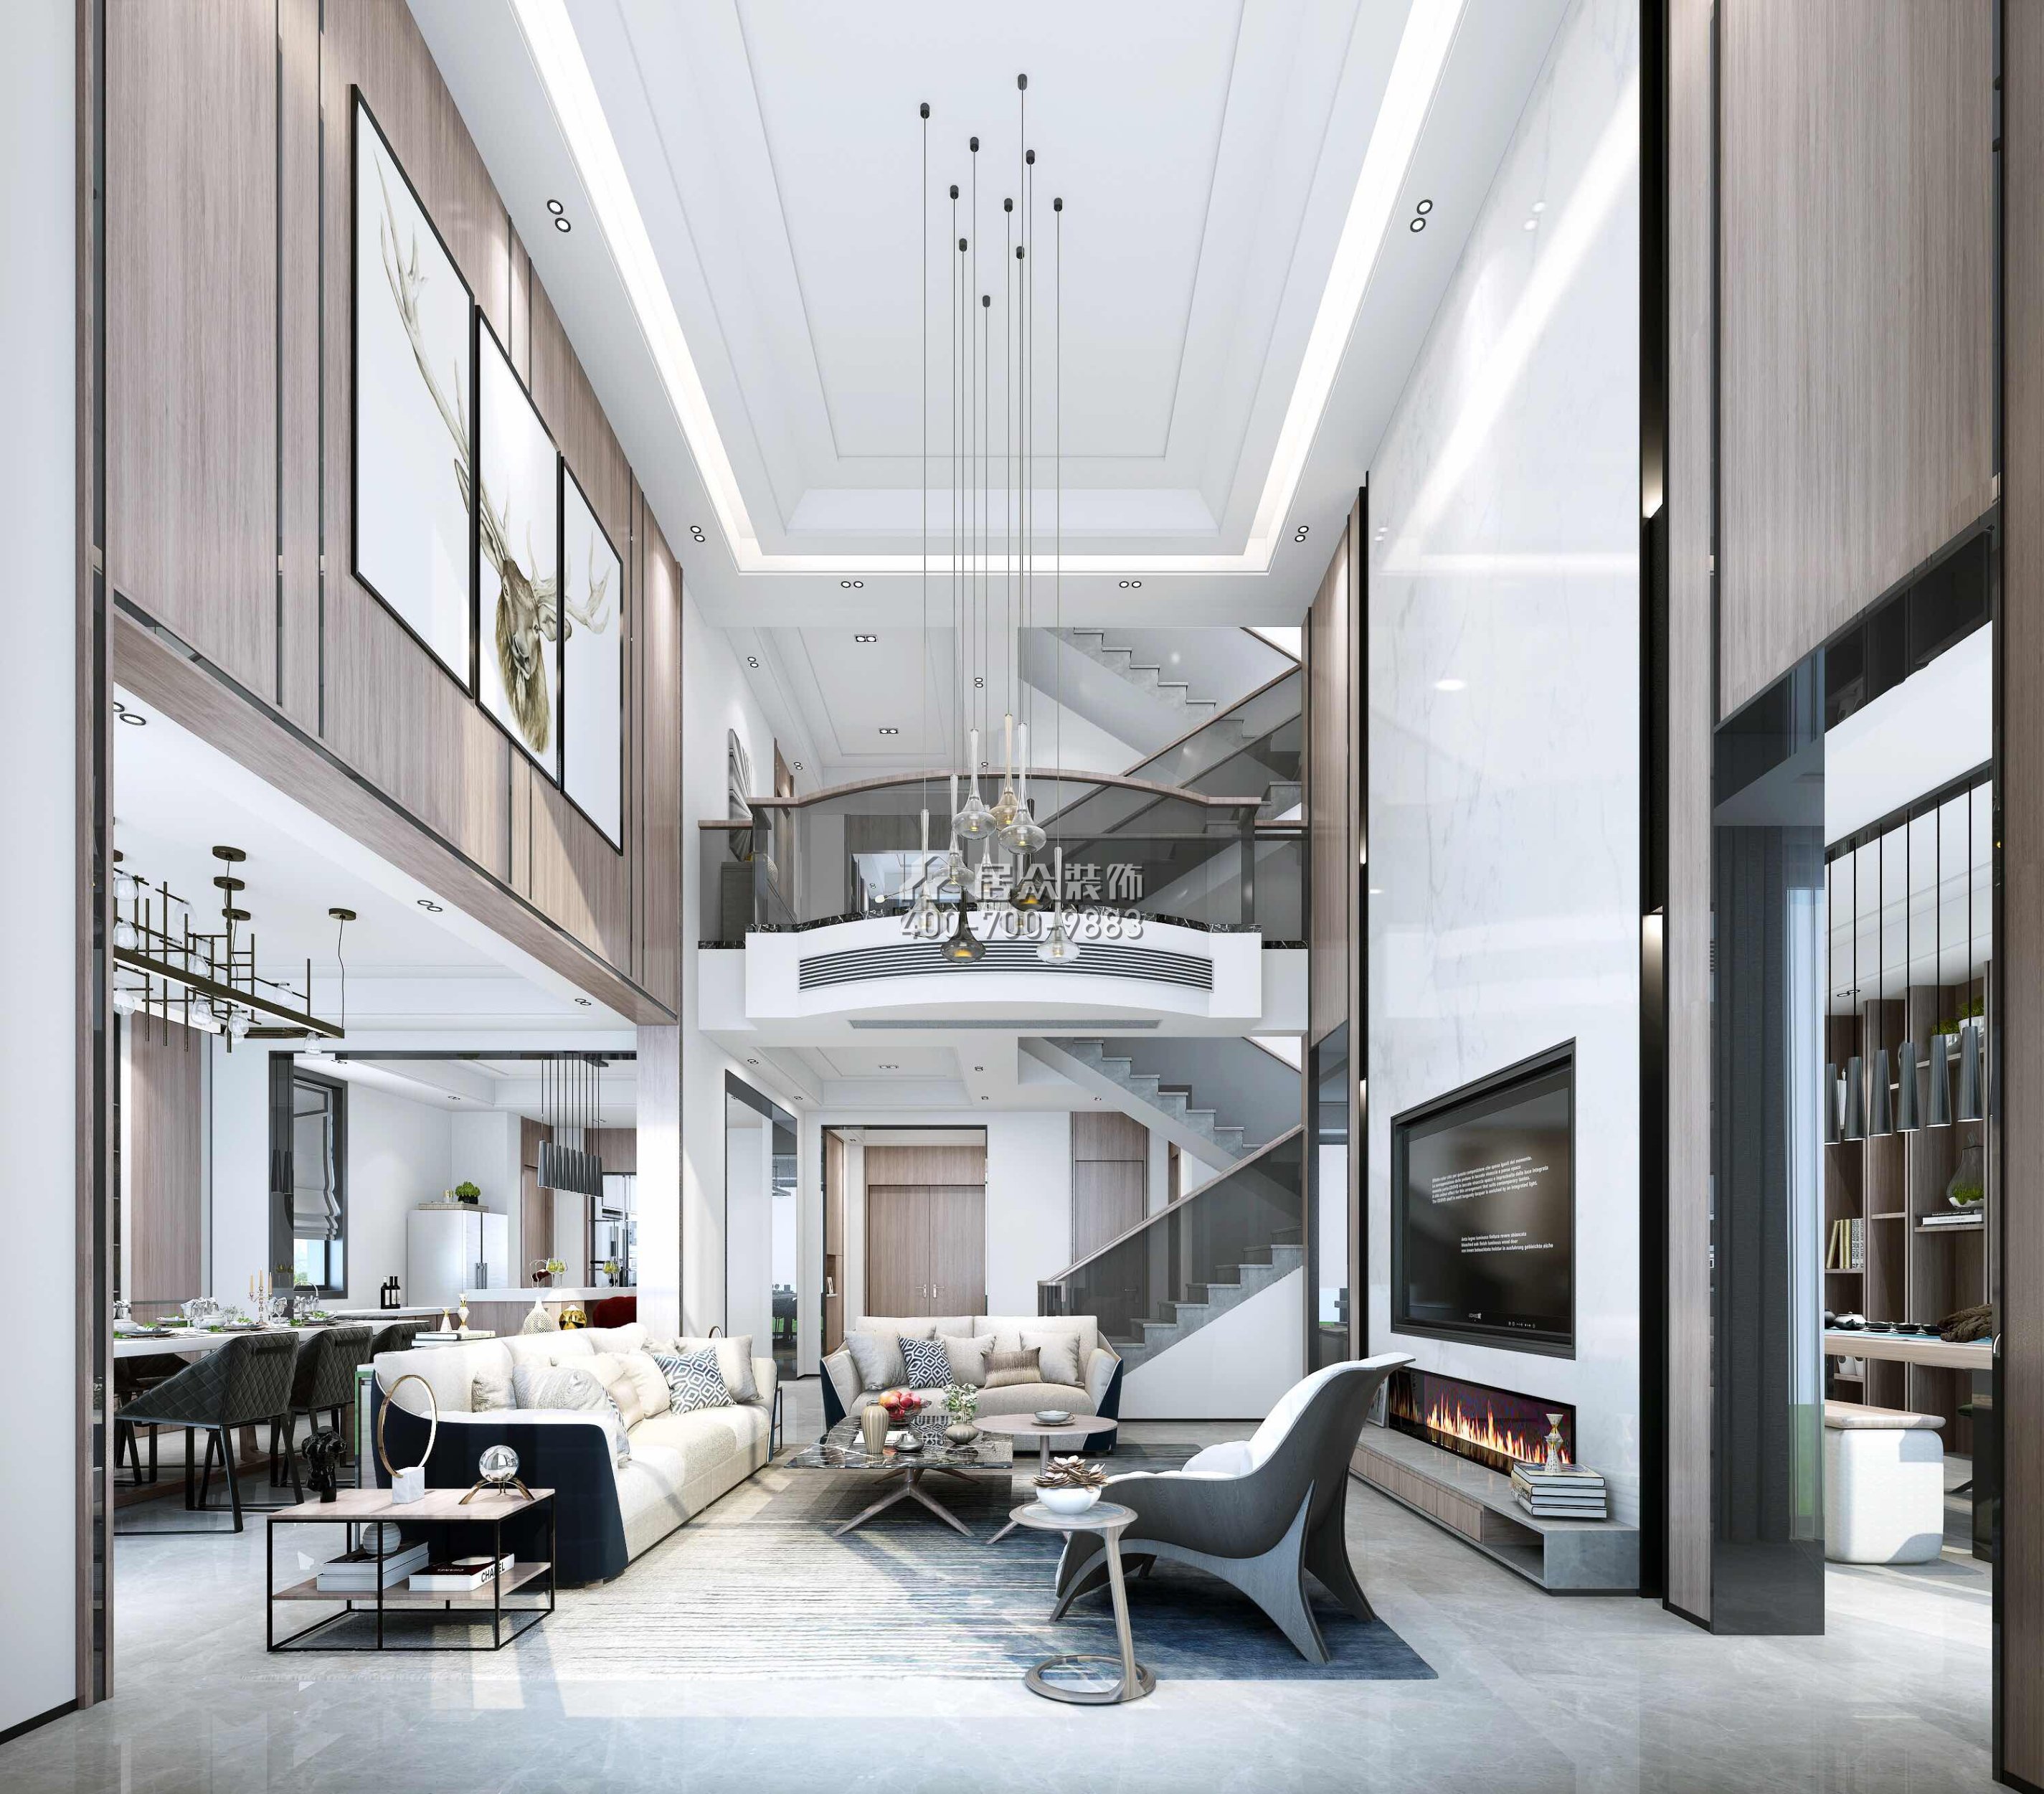 海逸豪庭321平方米現代簡約風格別墅戶型客廳裝修效果圖